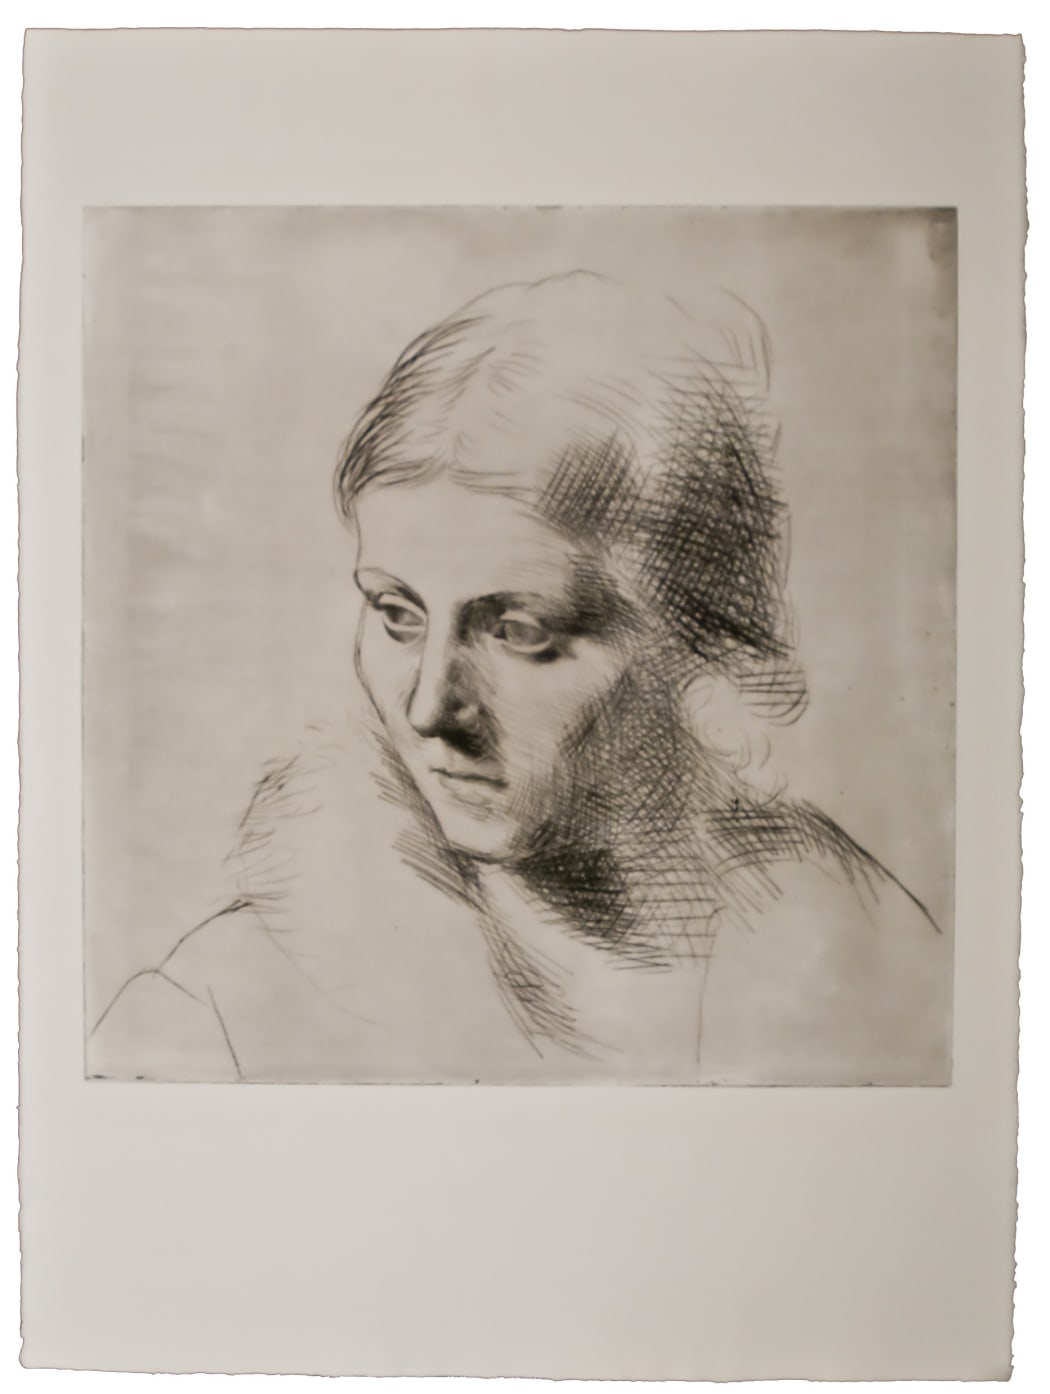 Portrait d’Olga au Col de Fourrure(Ba109), 1923, drypoint, 30 1/4 x 22 1/8 inches